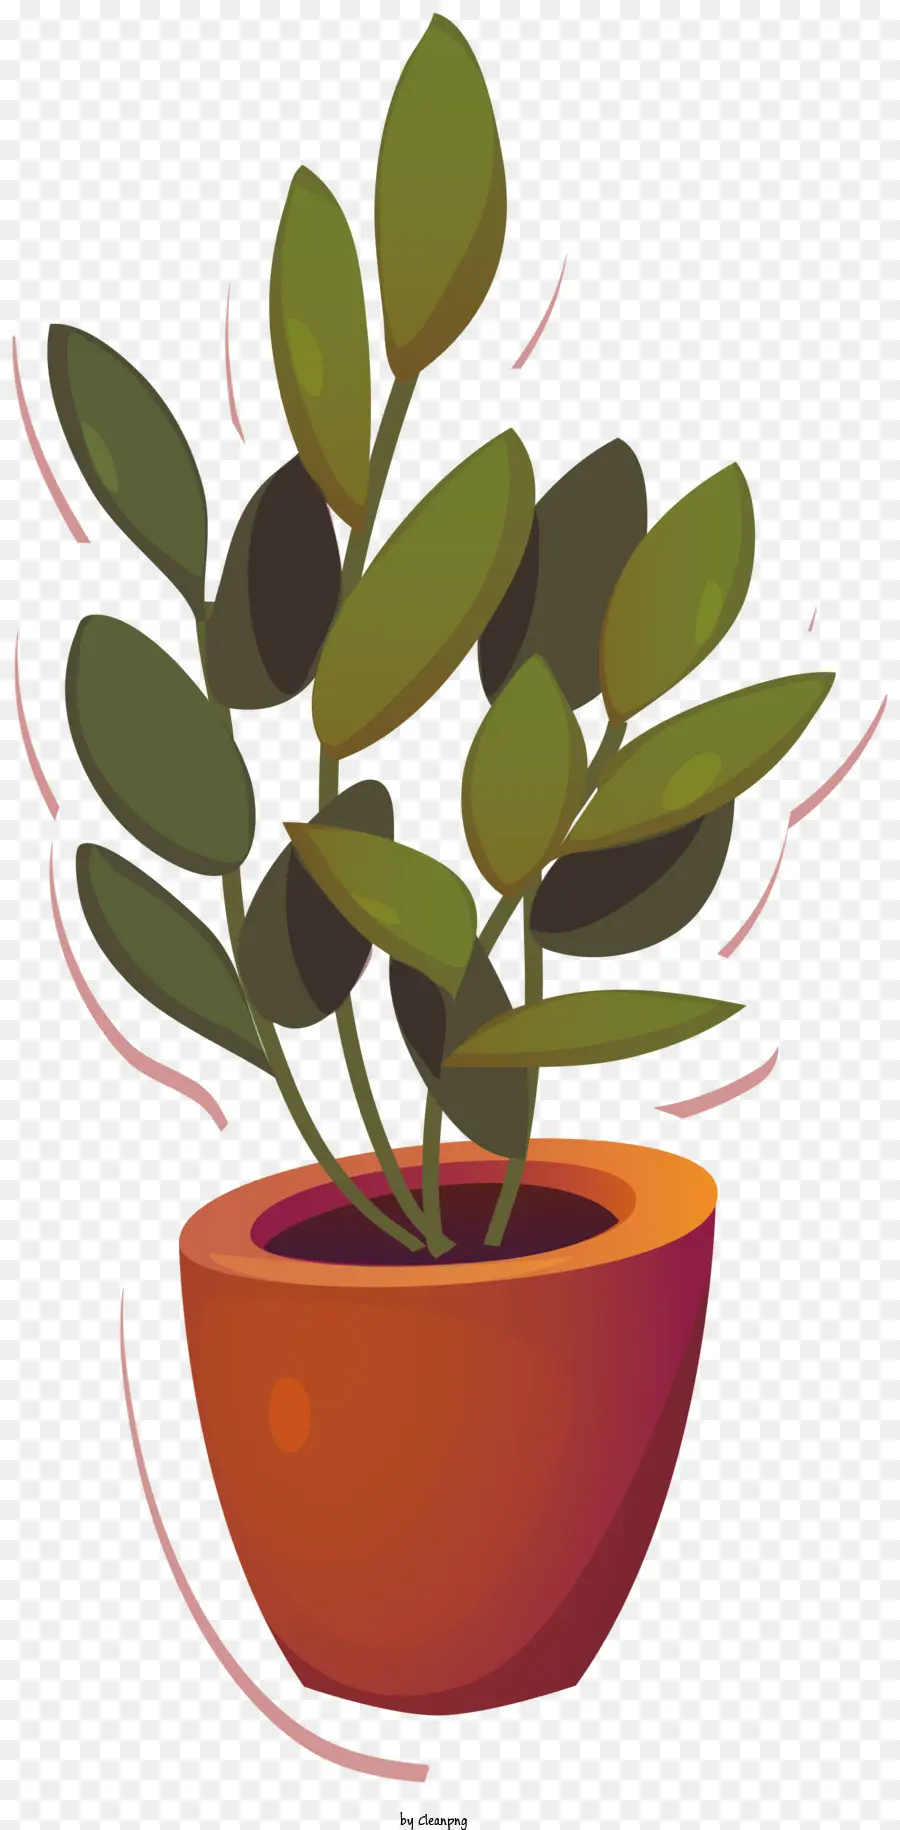 Topfpflanze in Topf schwarze Hintergrundblätter auf Zweigen, die wachsende Pflanze wachsen - Topfpflanze mit Blättern, die auf Zweigen wachsen